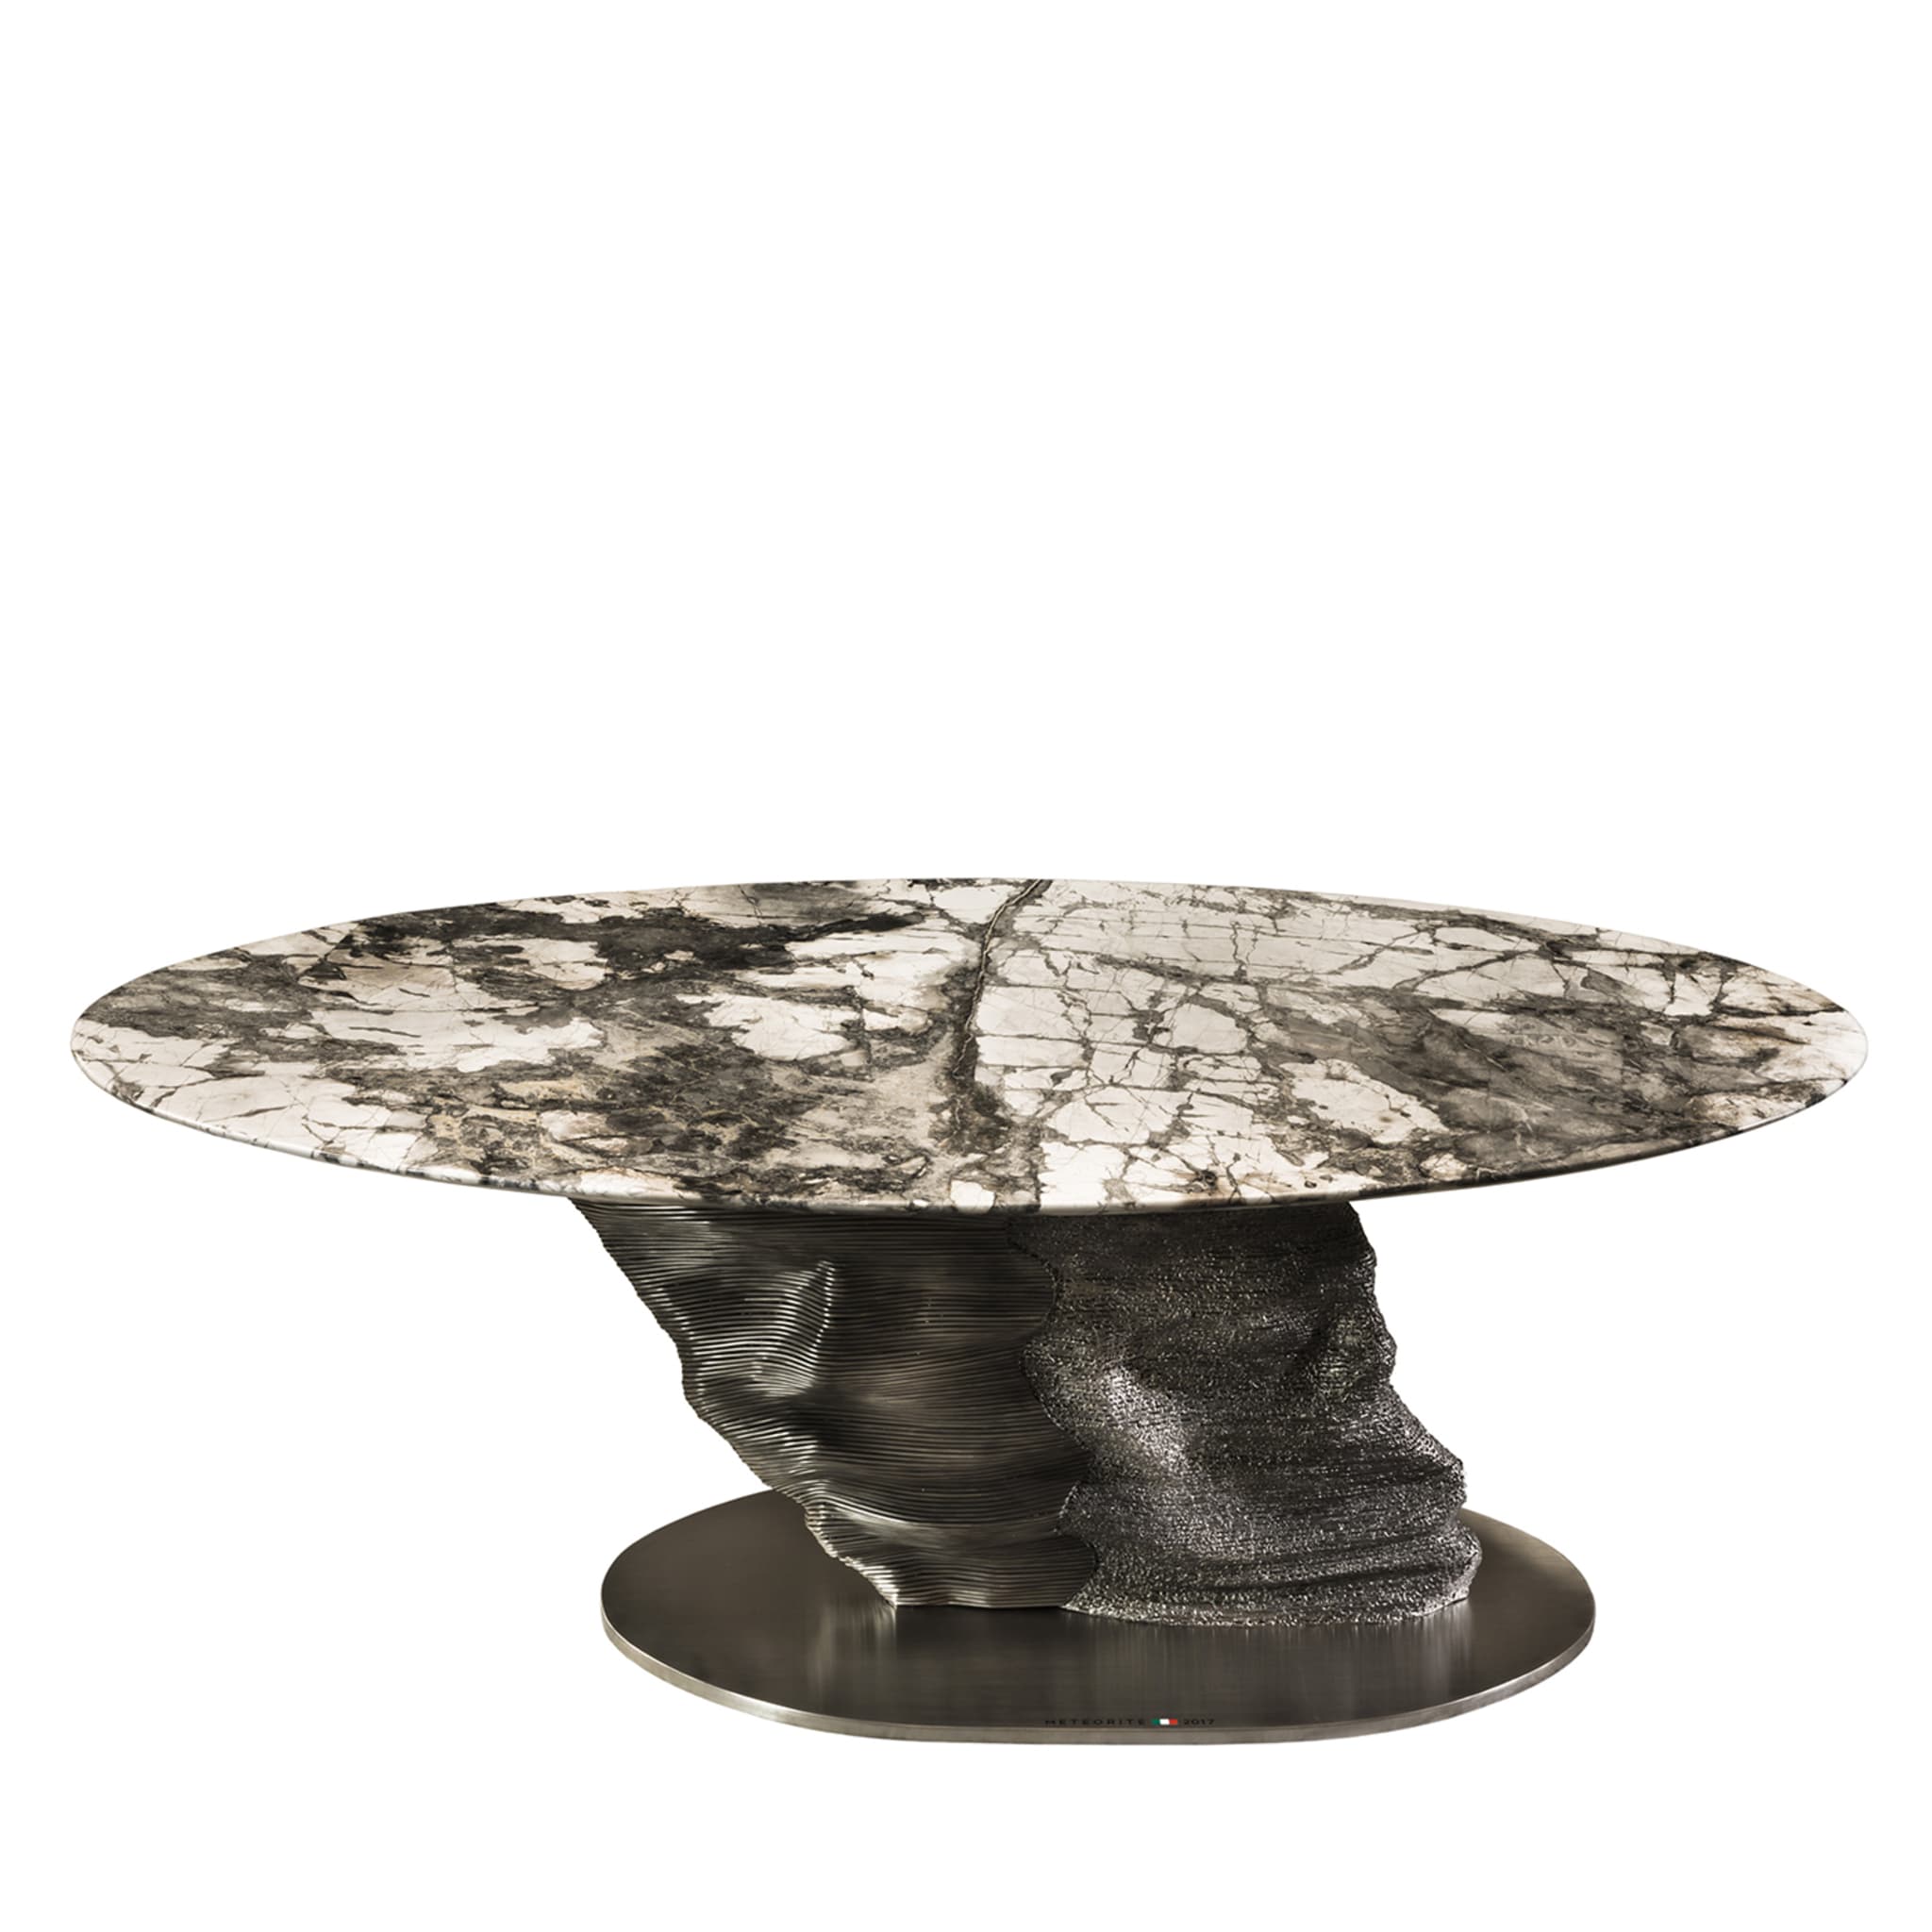 Meteorite Sculptural Table - Alternative view 1